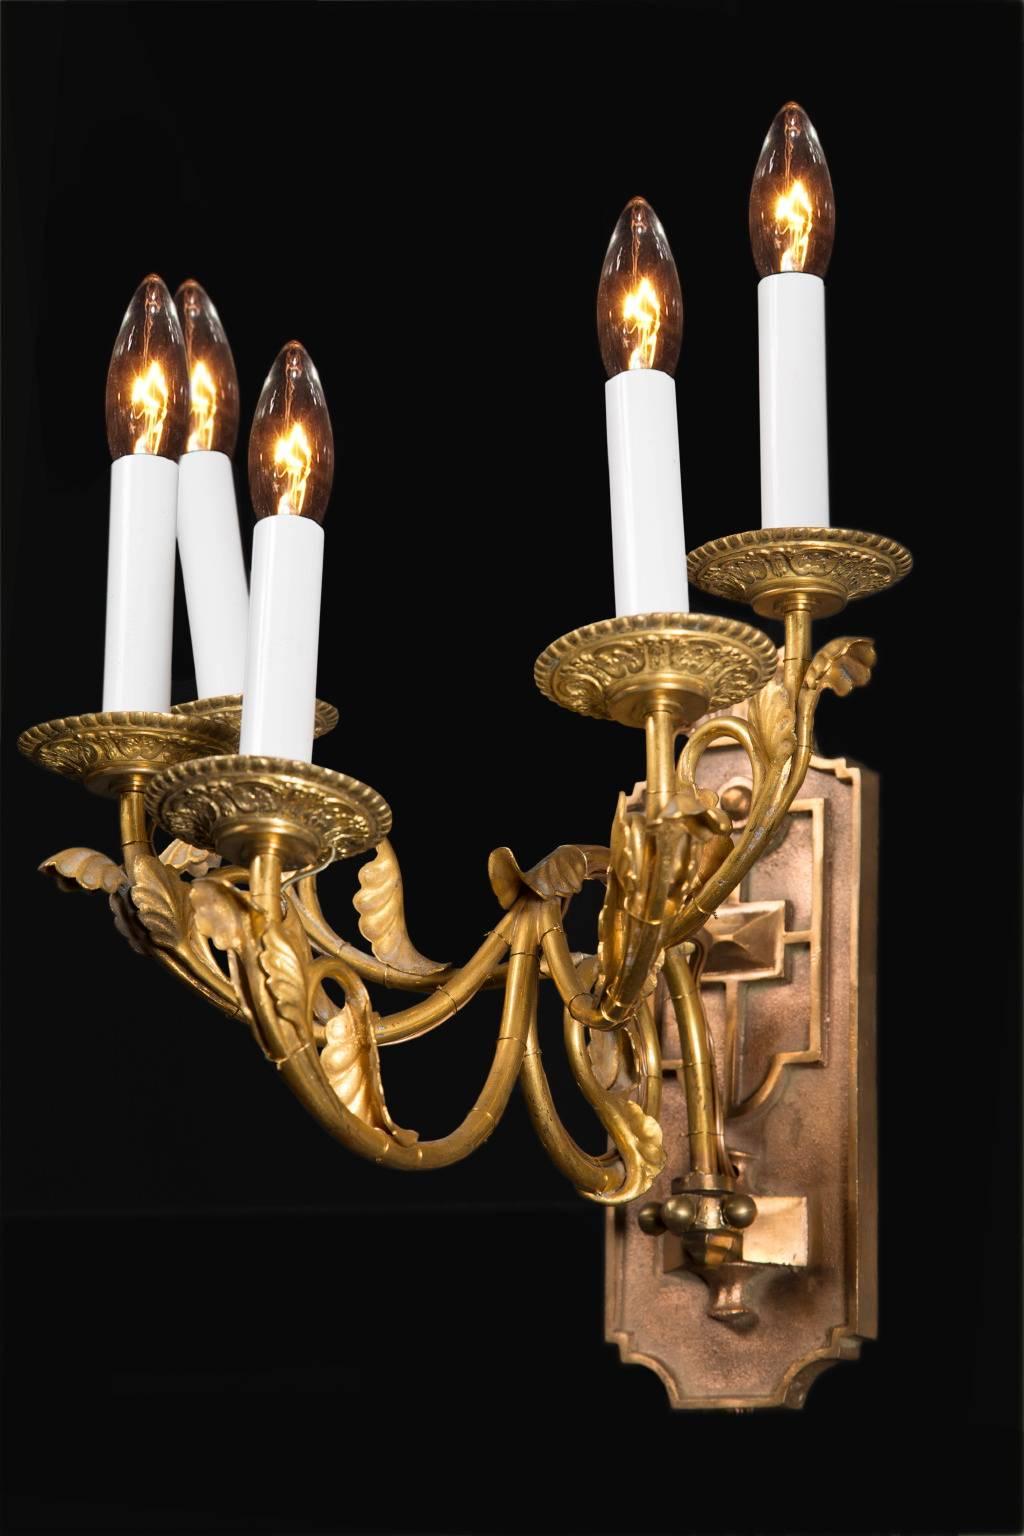 Paire d'appliques françaises inhabituelles, fabriquées au début du 20e siècle. En bronze, elles sont de style Louis XVI, avec cinq lumières sur chaque applique. Une lourde plaque arrière est décorée d'un motif géométrique et des bobèches en bronze